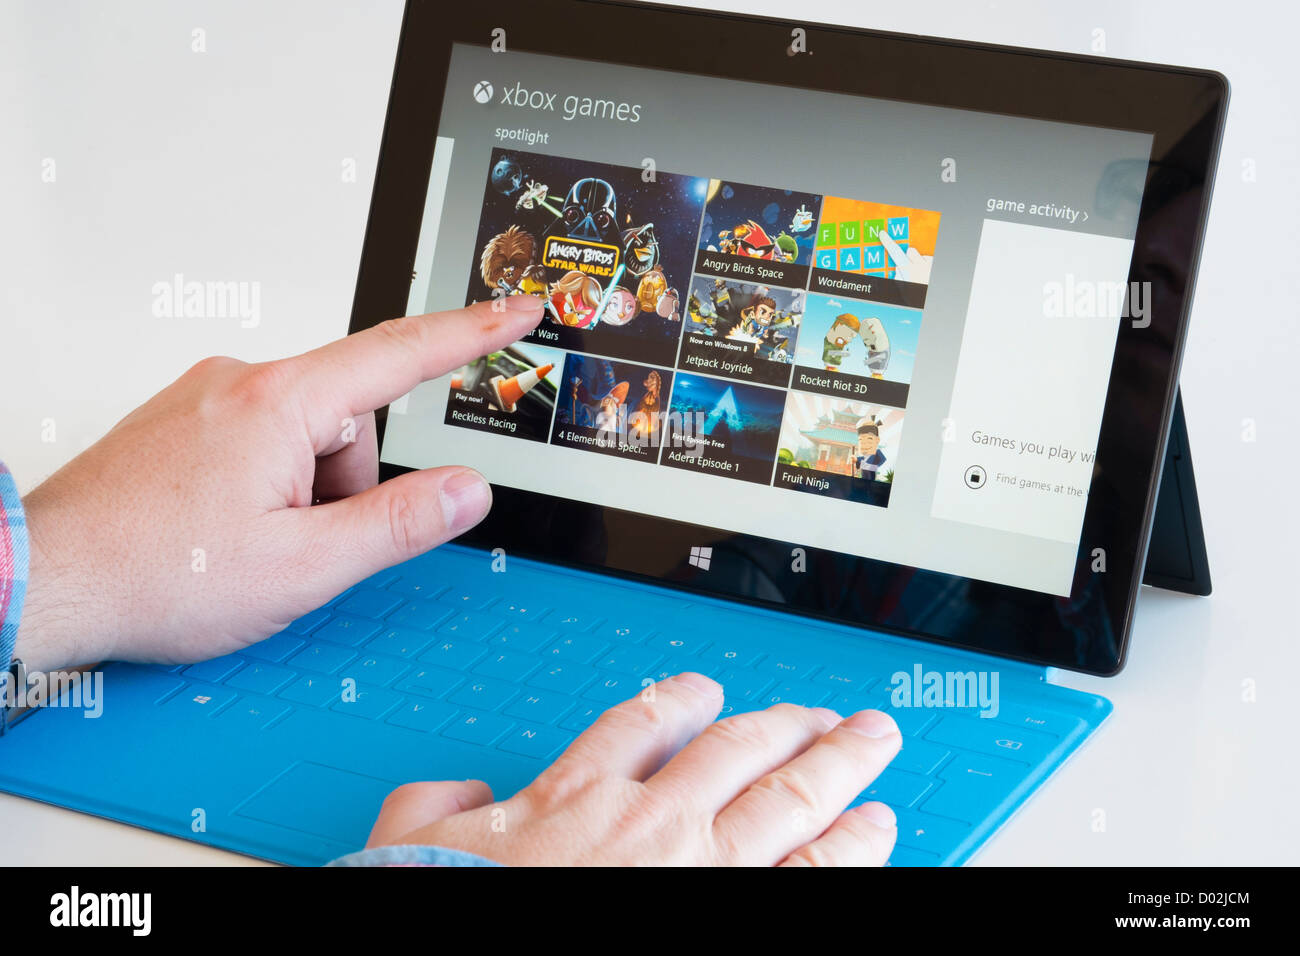 Microsoft Surface rt Tablet PC Spiele im AppStore durchsuchen  Stockfotografie - Alamy